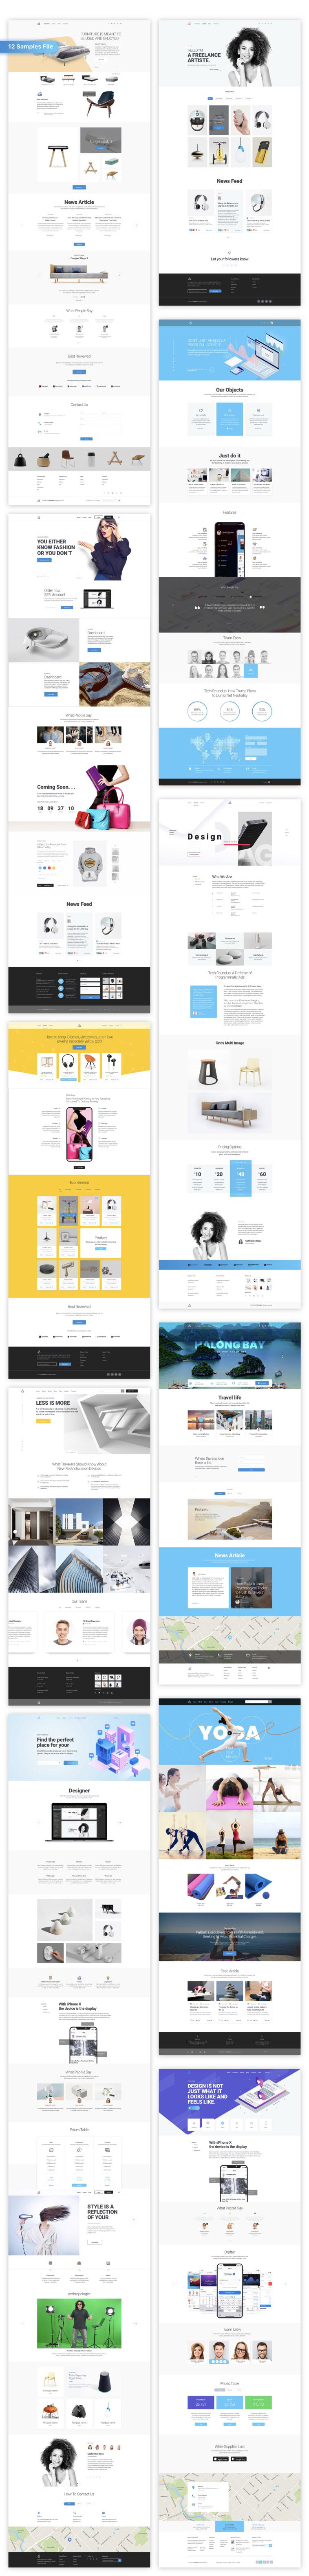 时尚类企业官网WEB设计模板完整合集Ataman Web U